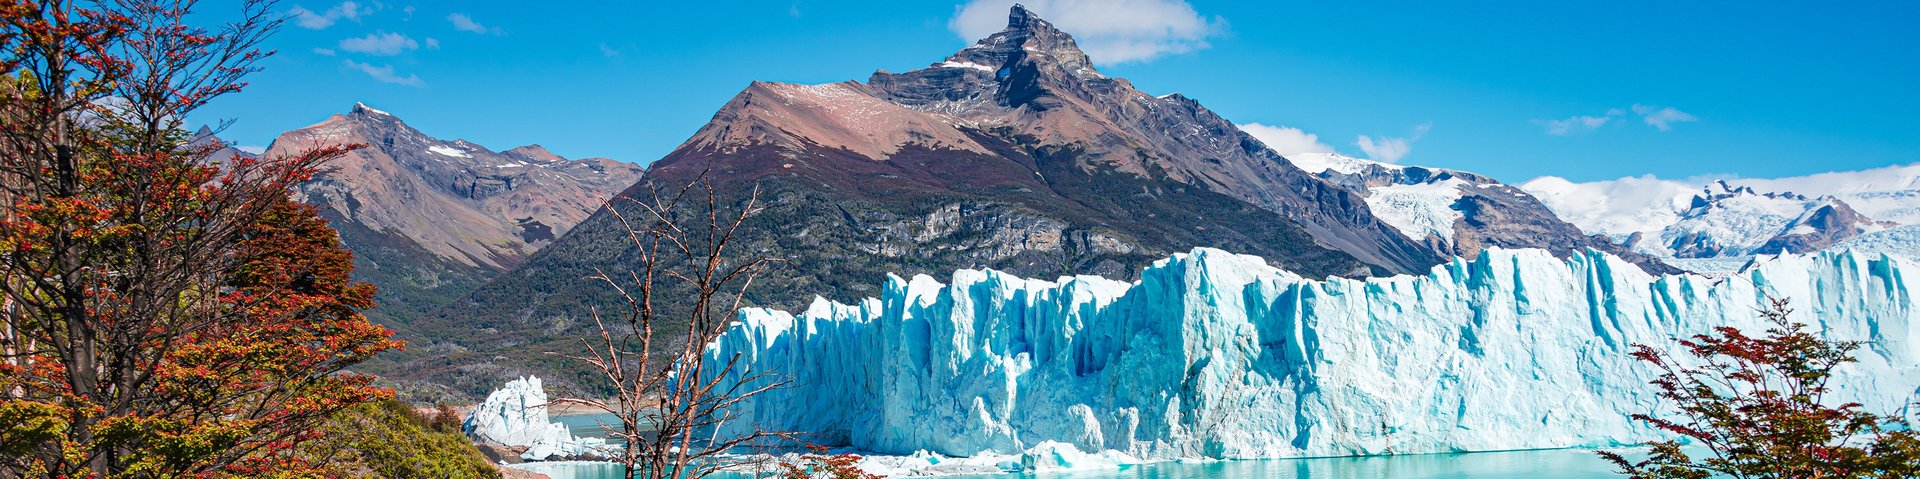 Perito Moreno Gletscher mit See im Vordergrund und Bergen im Hintergrund